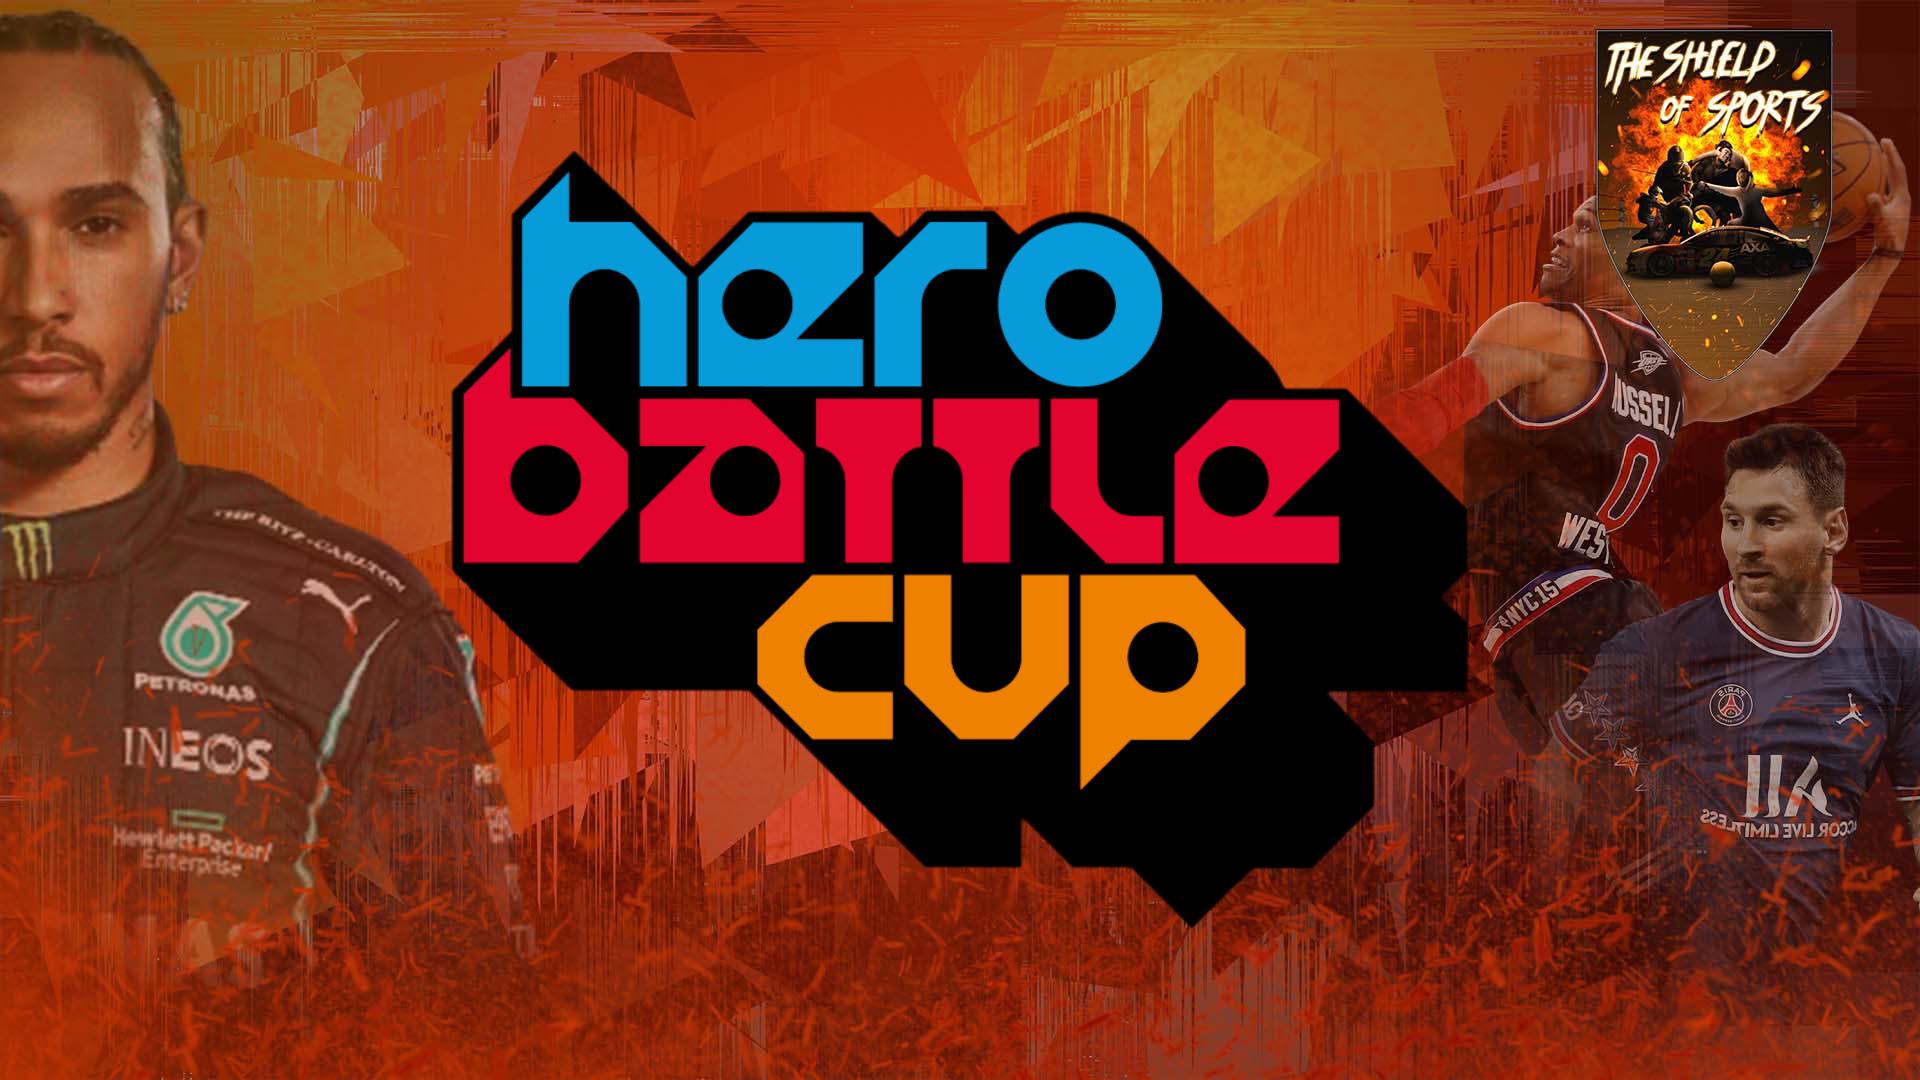 Conero Hero Battle Cup: Italia conclude prima nel medagliere